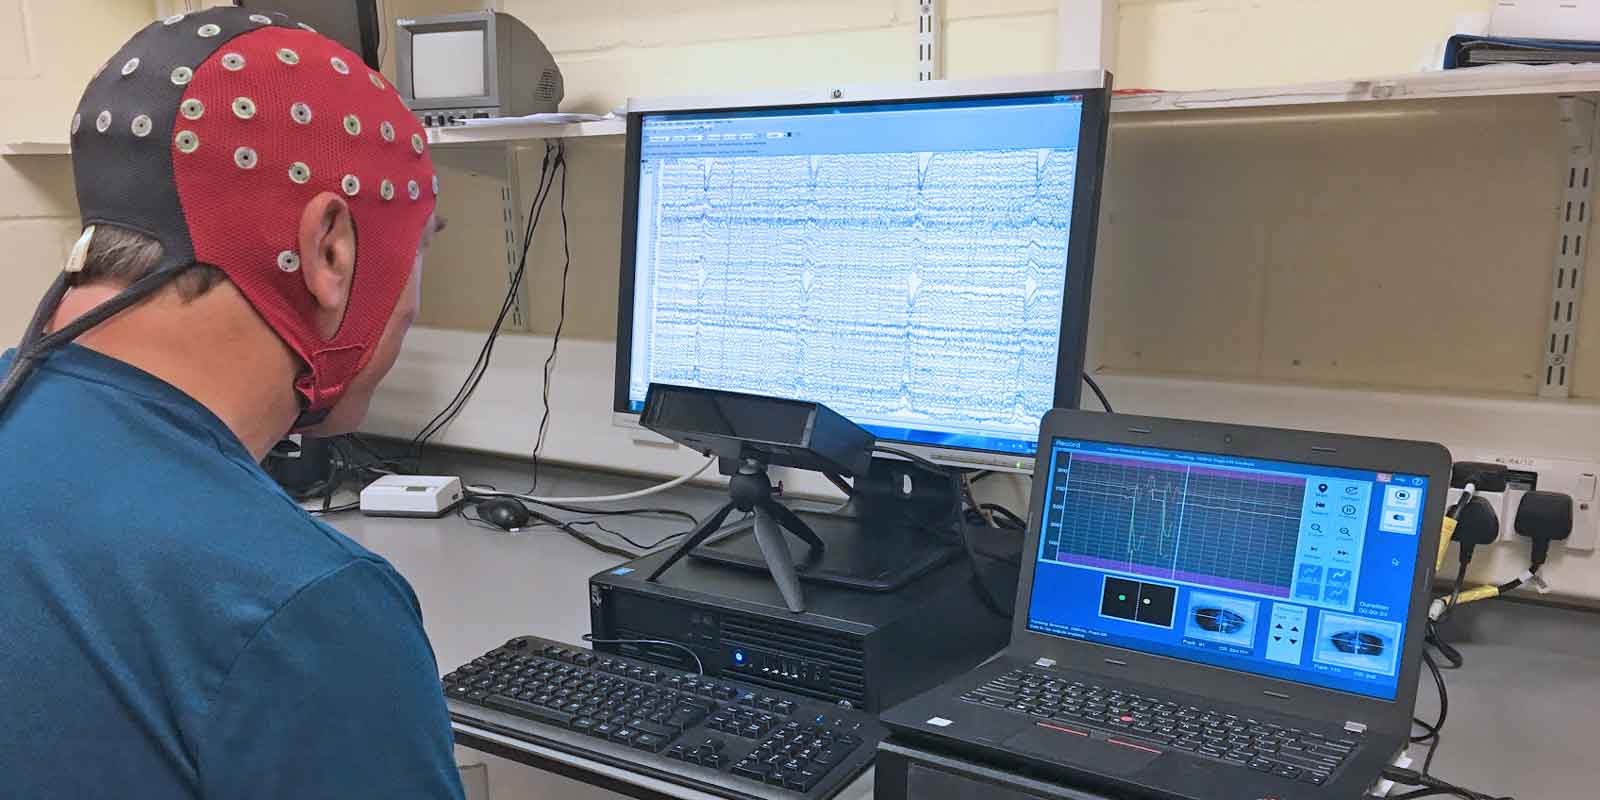 EEG and Eye Tracking